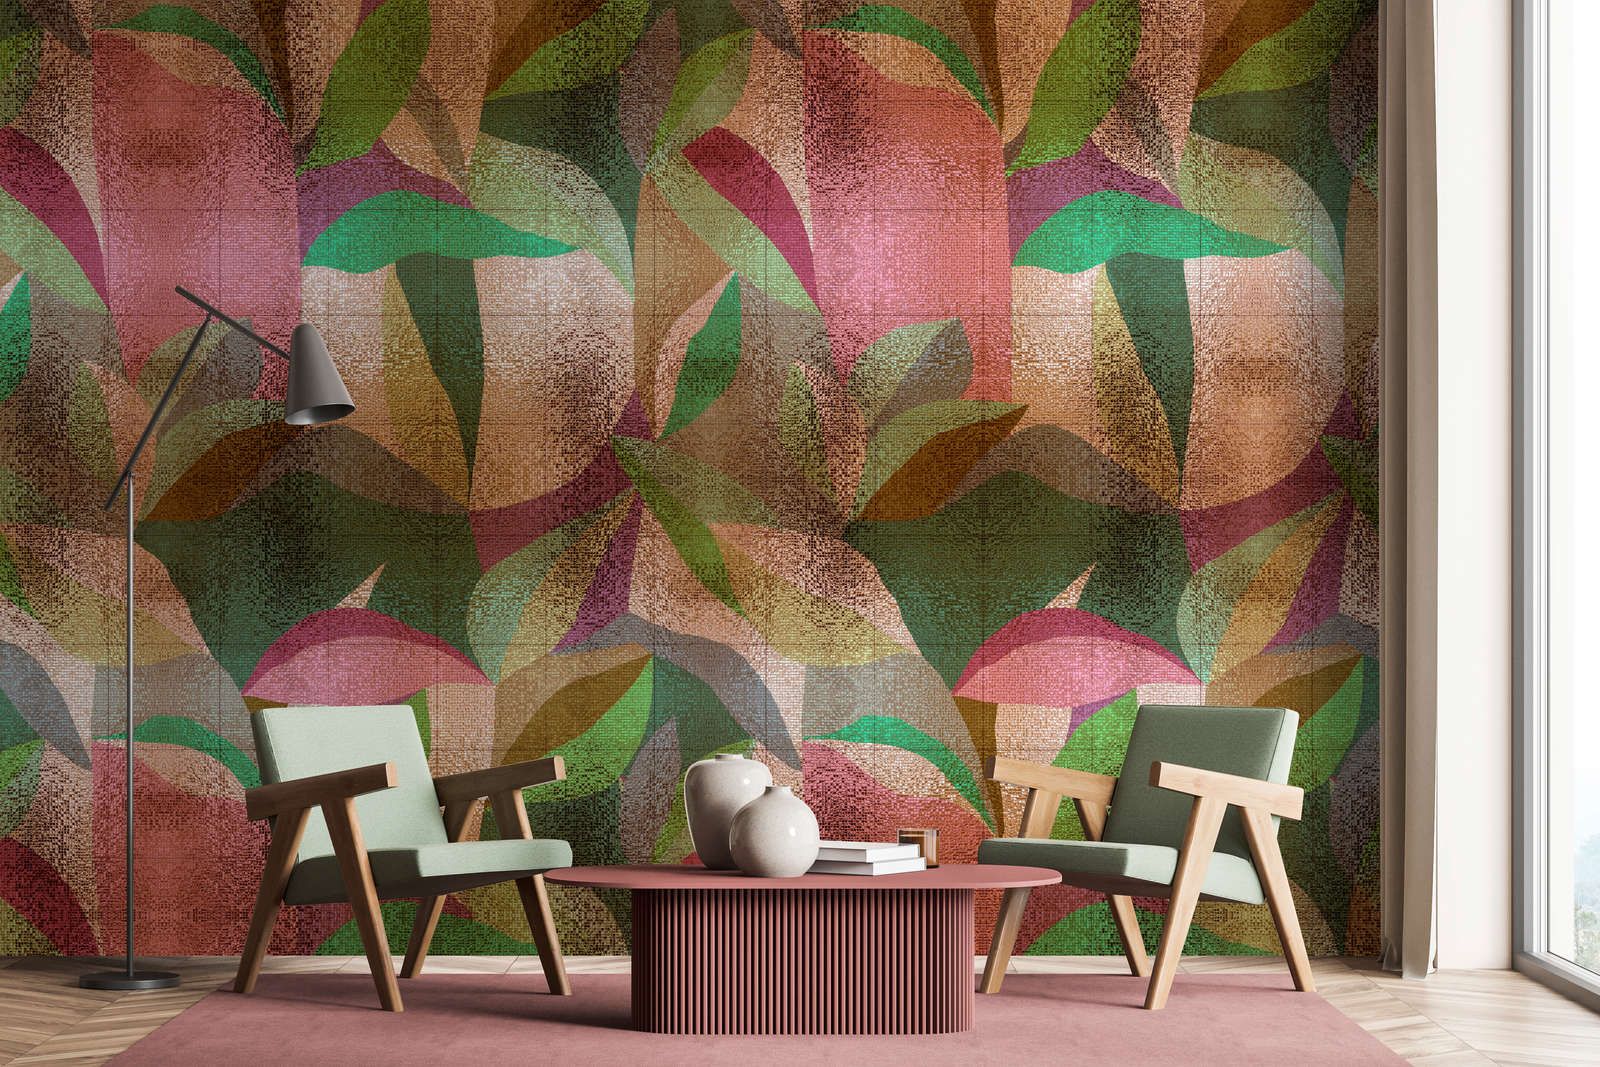             Fotomural »grandezza« - Diseño abstracto de hojas de colores con estructura de mosaico - Tela no tejida lisa, ligeramente nacarada y brillante
        